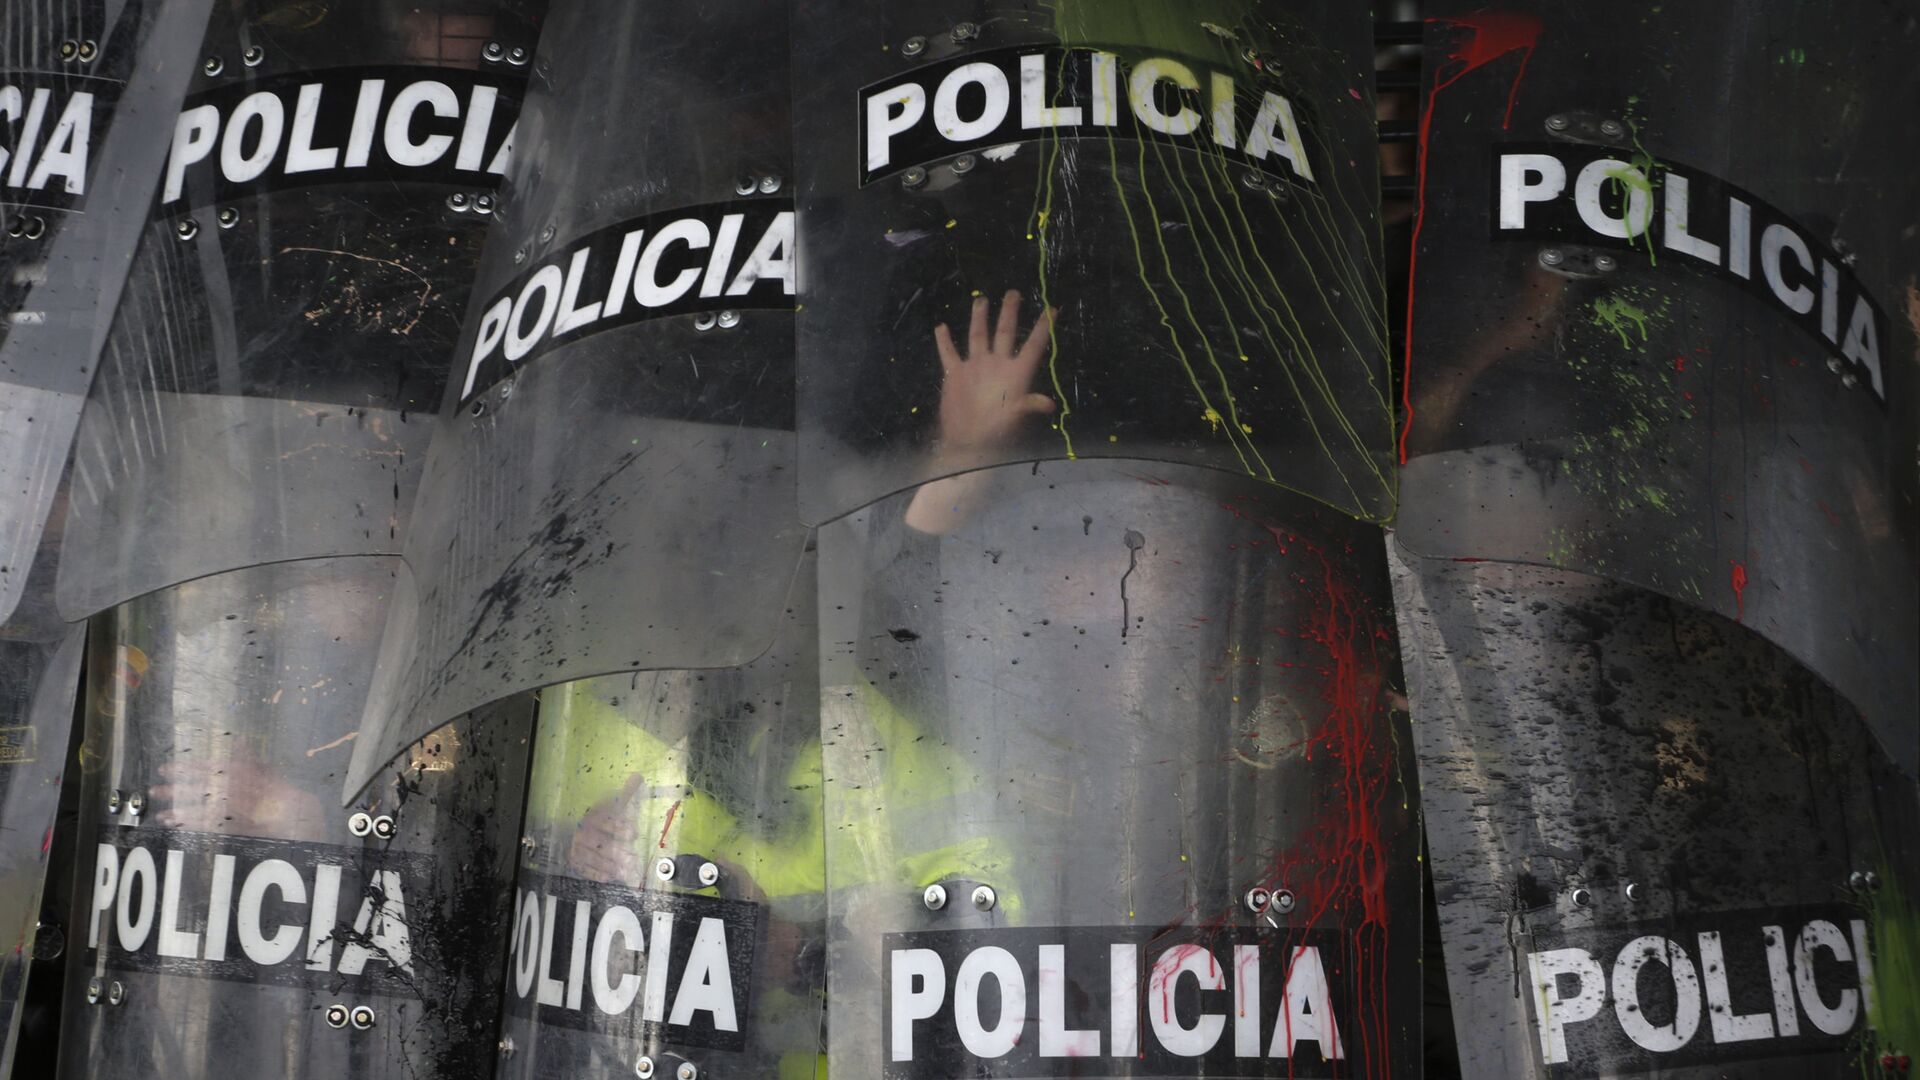 Escudos de la Policía durante una manifestación estudiantil en Bogotá, Colombia, en octubre de 2019 - Sputnik Mundo, 1920, 16.12.2021